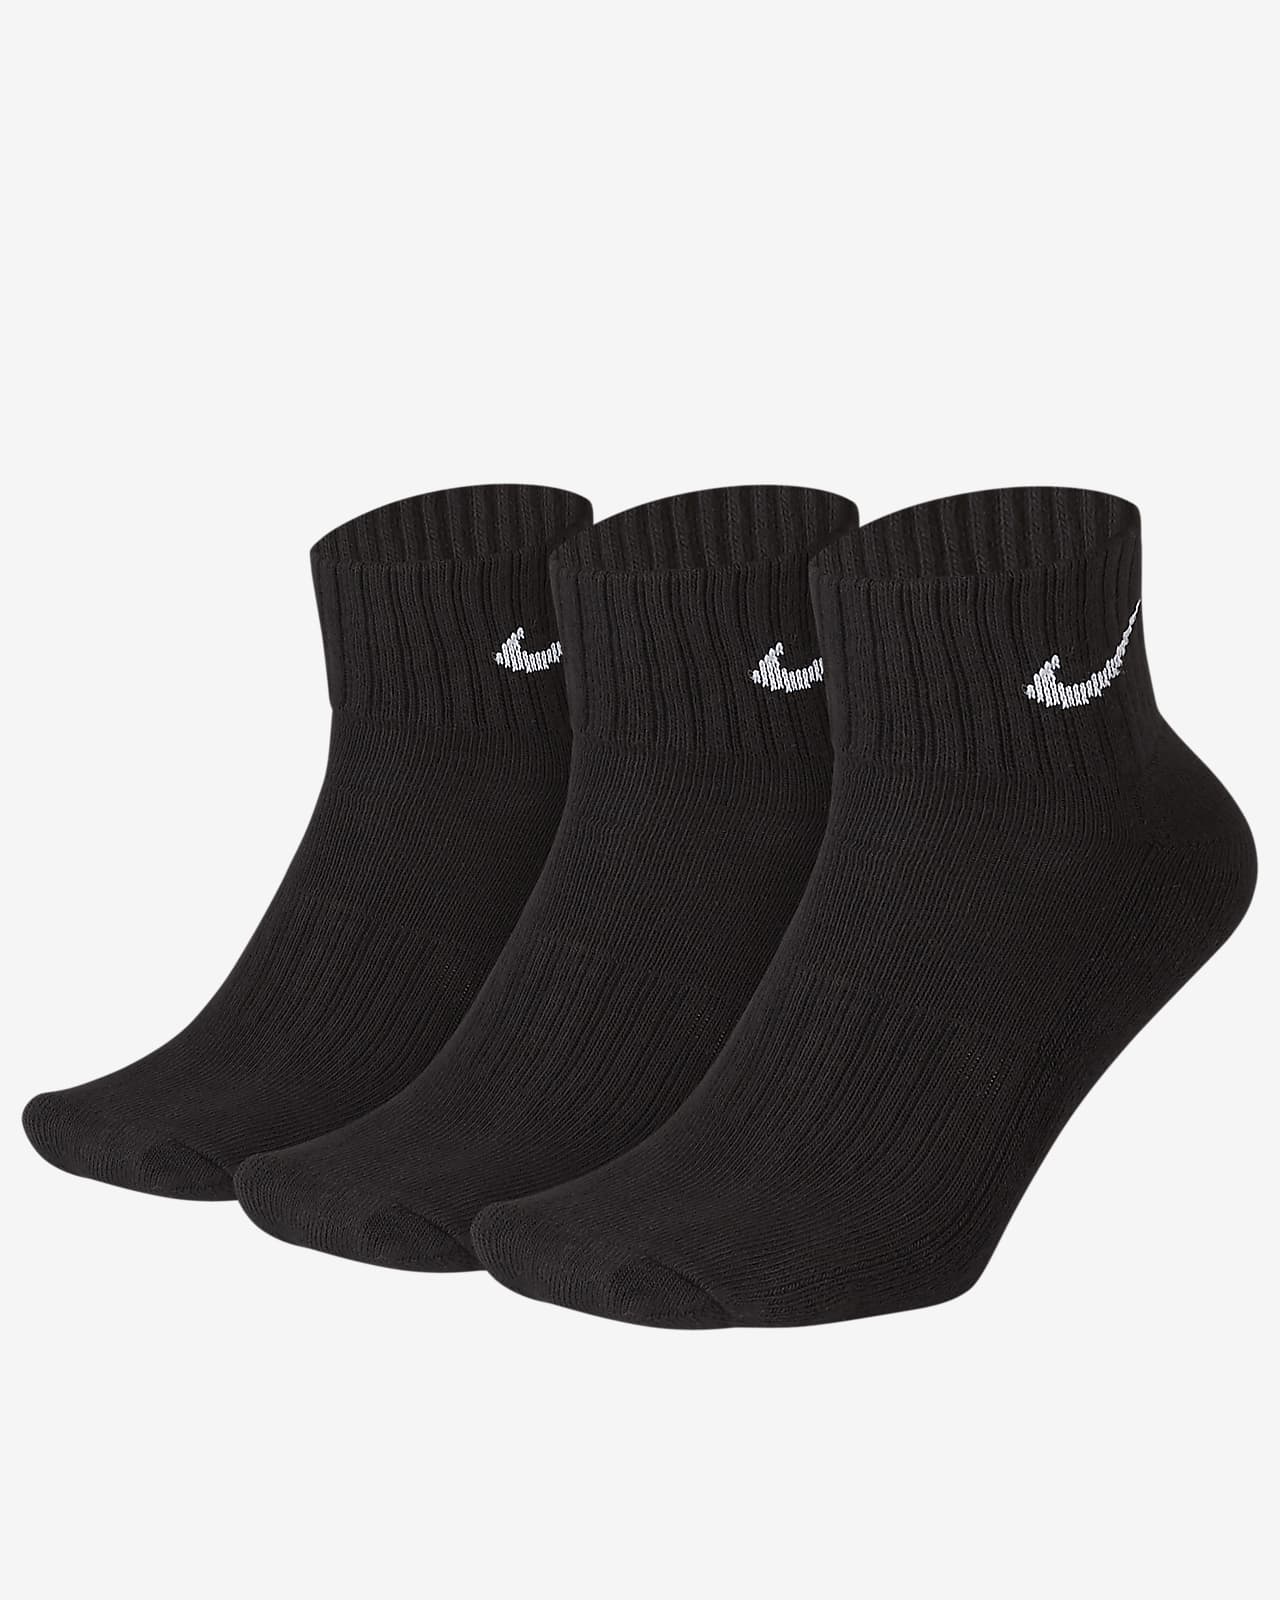 Calze alla caviglia ammortizzate Nike (3 paia)